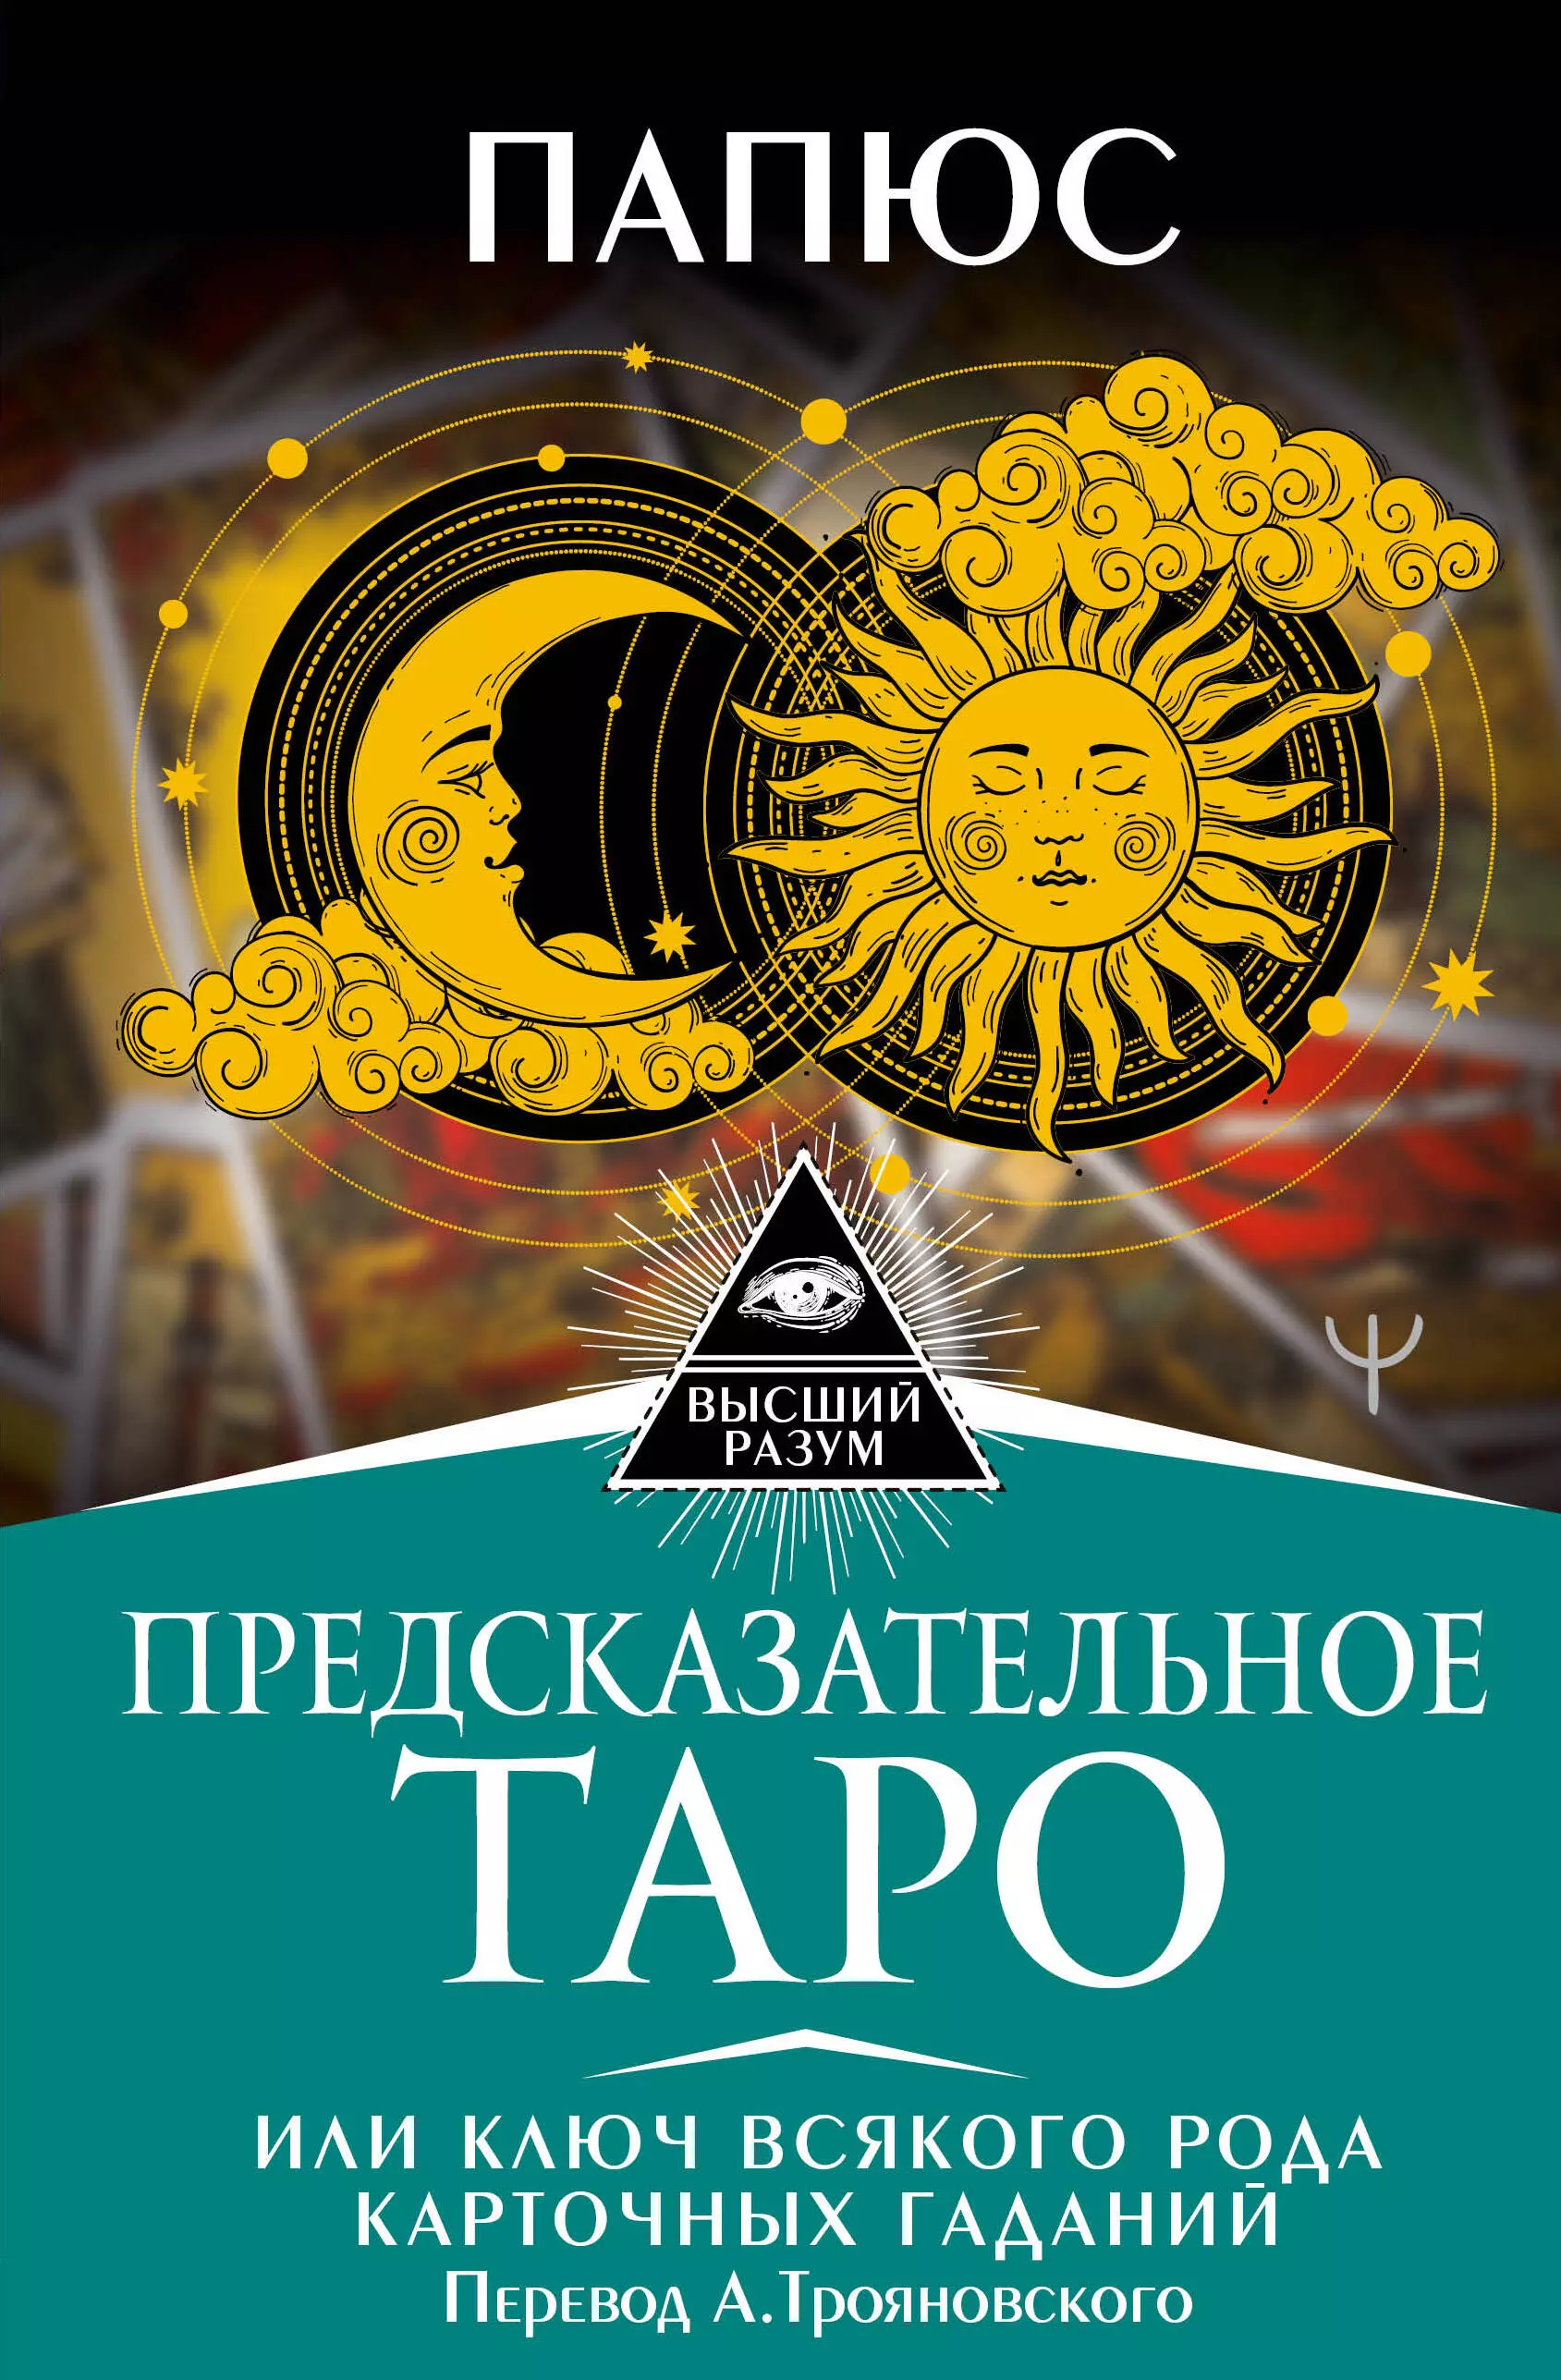 Предсказательное Таро, или Ключ всякого рода карточных гаданий папюс таро папюса ключ всякого рода карточных гаданий книга руководство